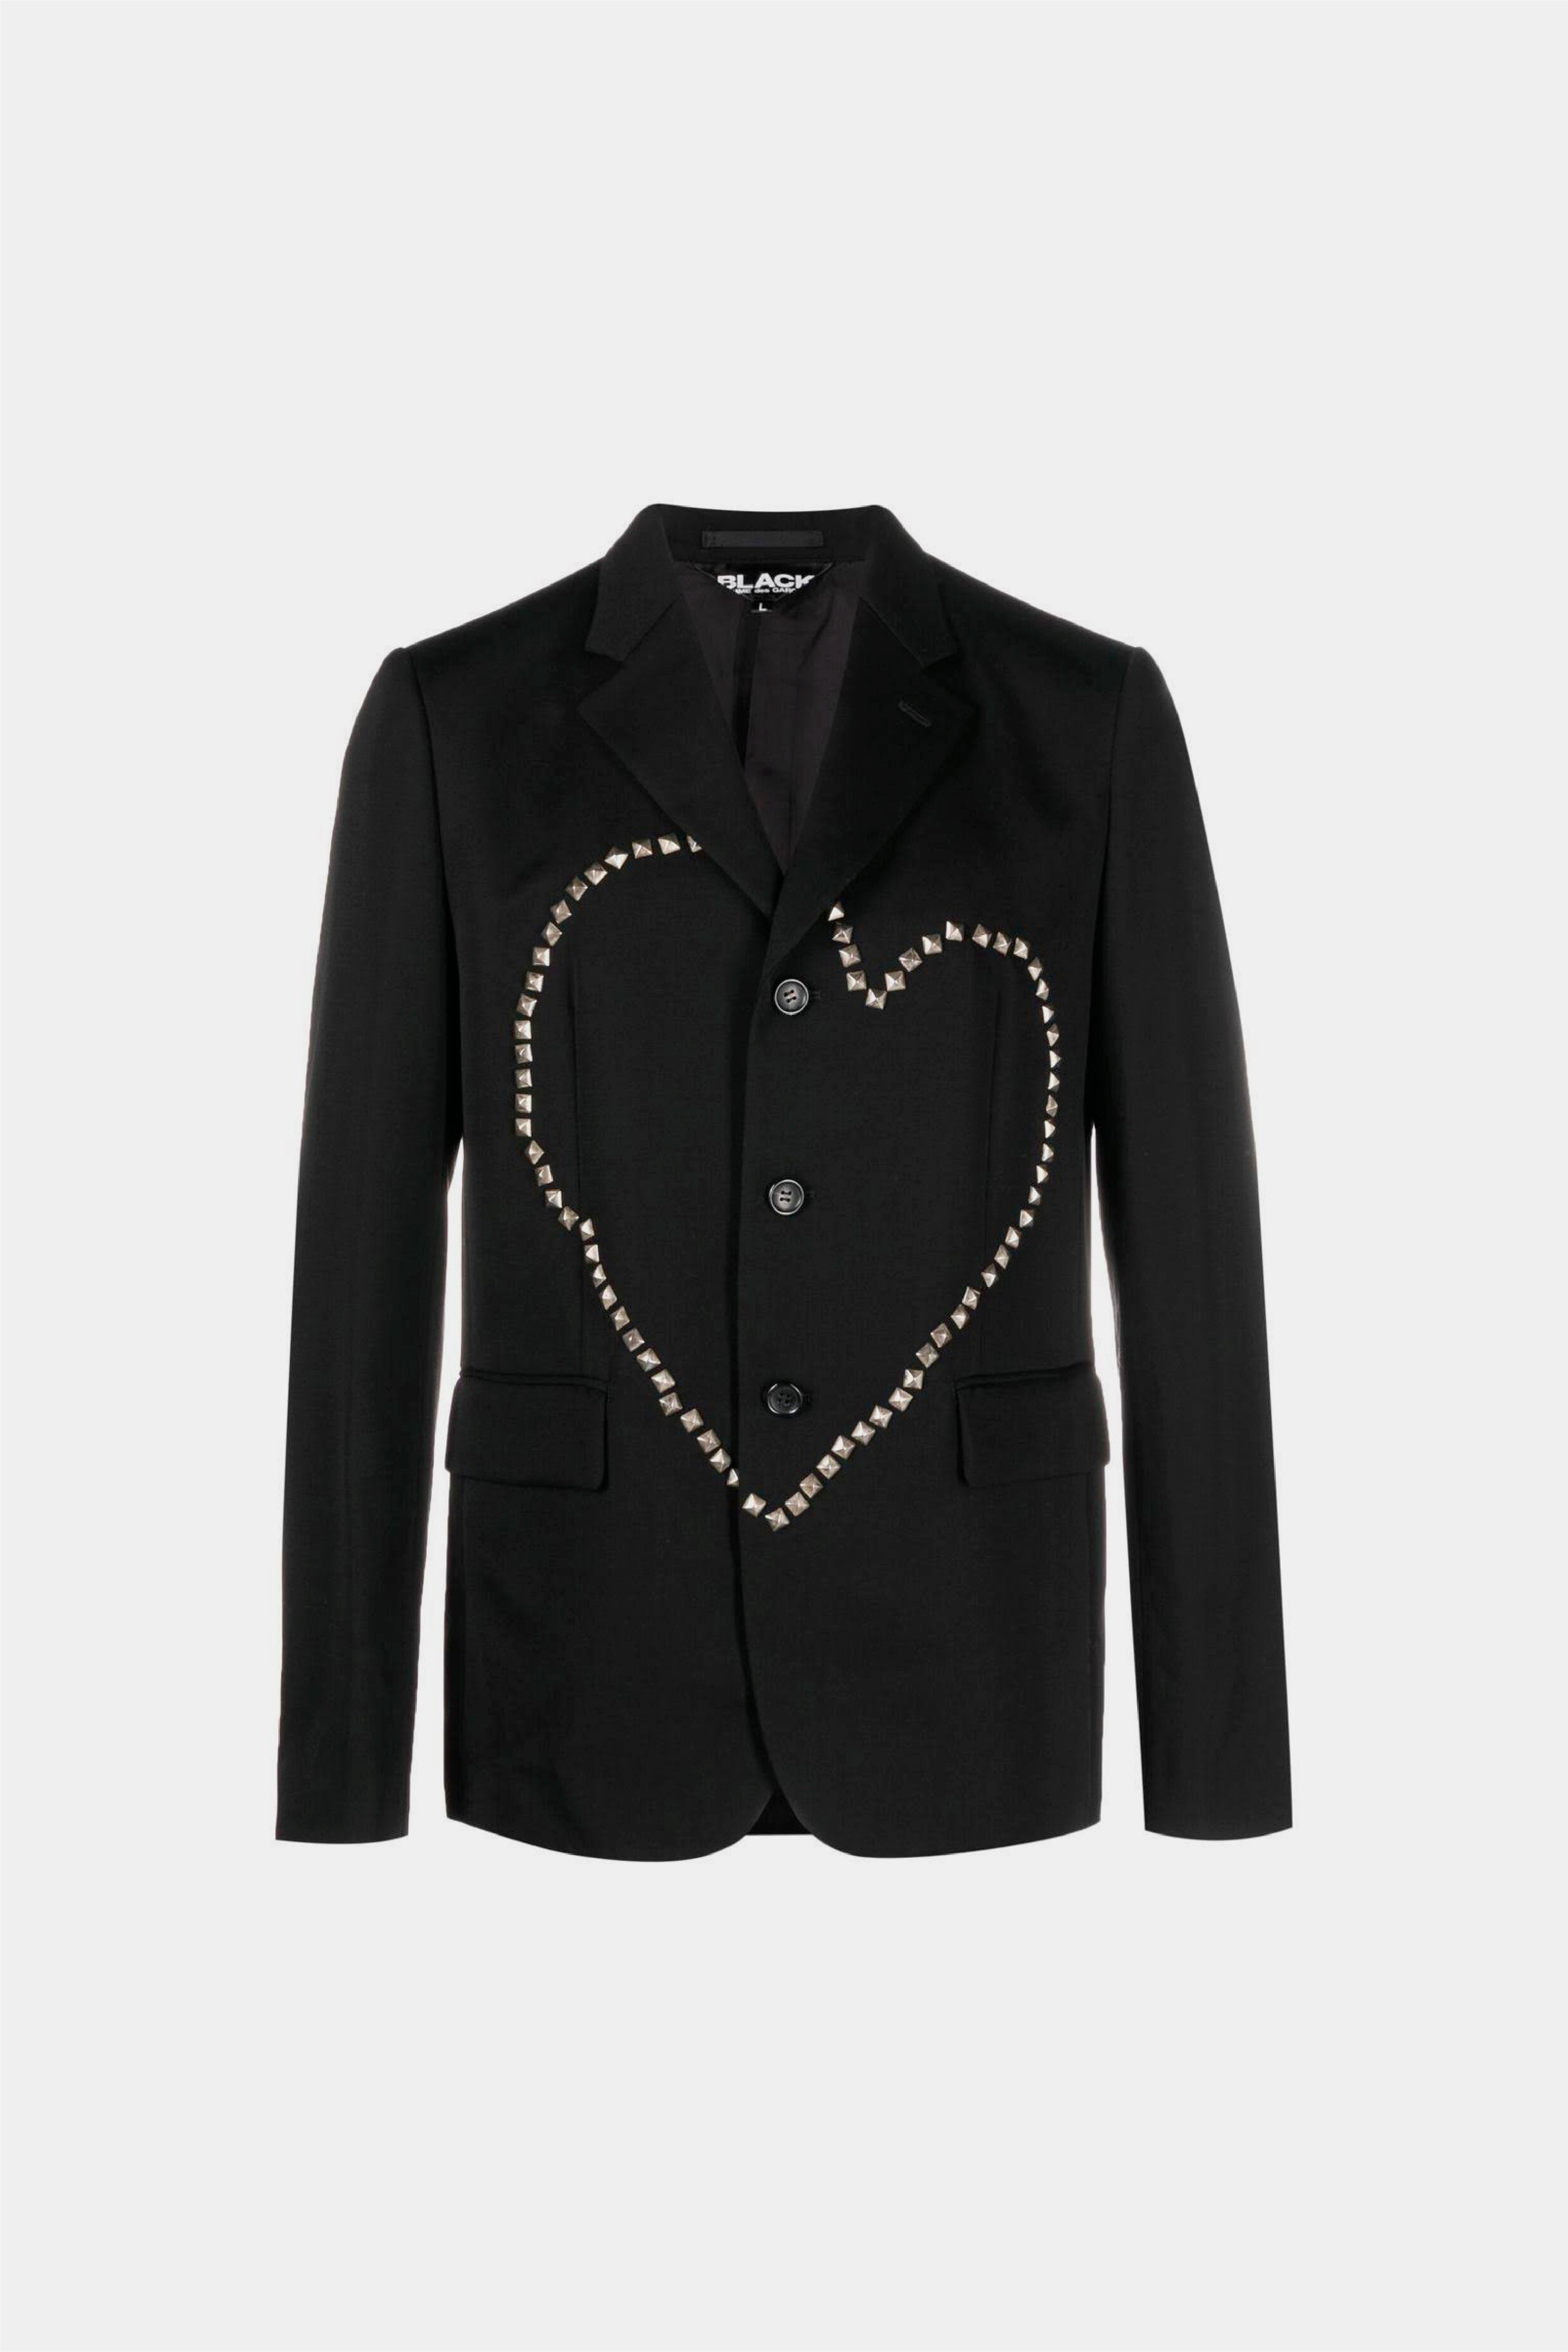 Selectshop FRAME - COMME DES GARÇONS BLACK Unisex Jacket Outerwear Concept Store Dubai